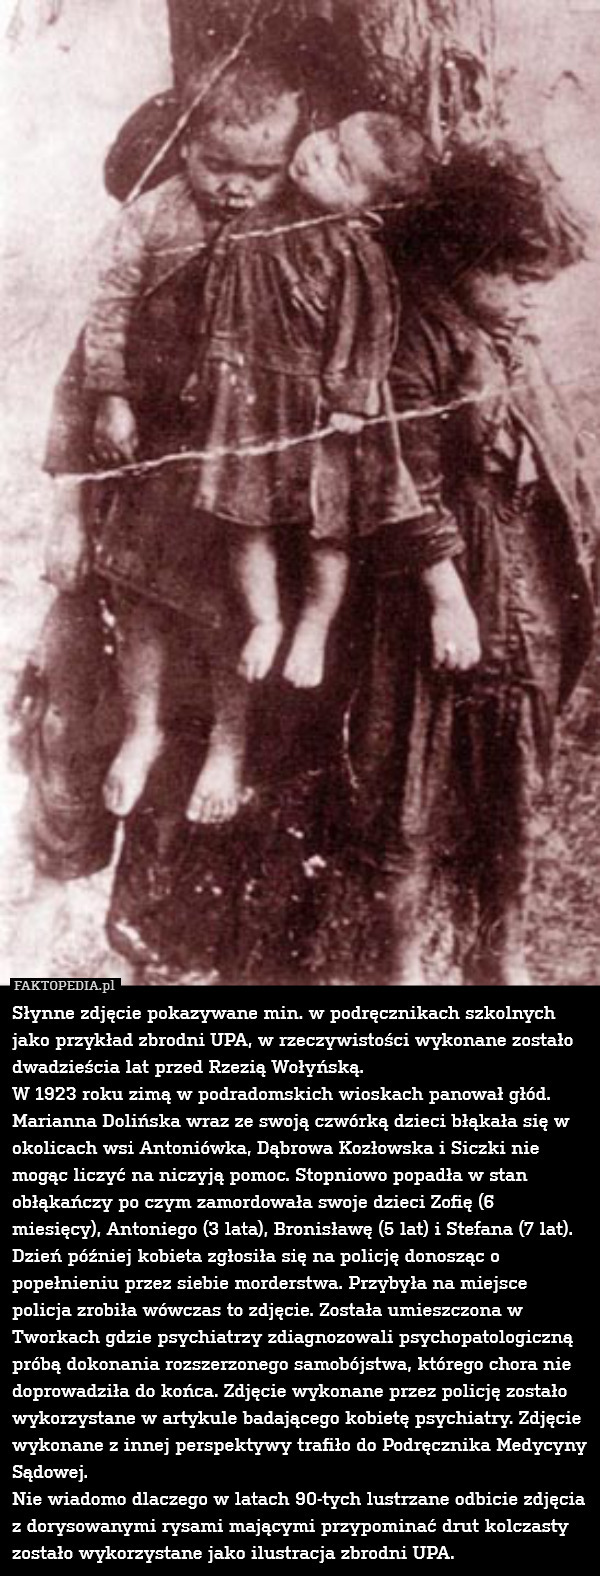 Słynne zdjęcie pokazywane min. w podręcznikach szkolnych jako przykład zbrodni UPA, w rzeczywistości wykonane zostało dwadzieścia lat przed Rzezią Wołyńską.
W 1923 roku zimą w podradomskich wioskach panował głód. Marianna Dolińska wraz ze swoją czwórką dzieci błąkała się w okolicach wsi Antoniówka, Dąbrowa Kozłowska i Siczki nie mogąc liczyć na niczyją pomoc. Stopniowo popadła w stan obłąkańczy po czym zamordowała swoje dzieci Zofię (6 miesięcy), Antoniego (3 lata), Bronisławę (5 lat) i Stefana (7 lat). Dzień później kobieta zgłosiła się na policję donosząc o popełnieniu przez siebie morderstwa. Przybyła na miejsce policja zrobiła wówczas to zdjęcie. Została umieszczona w Tworkach gdzie psychiatrzy zdiagnozowali psychopatologiczną próbą dokonania rozszerzonego samobójstwa, którego chora nie doprowadziła do końca. Zdjęcie wykonane przez policję zostało wykorzystane w artykule badającego kobietę psychiatry. Zdjęcie wykonane z innej perspektywy trafiło do Podręcznika Medycyny Sądowej.
Nie wiadomo dlaczego w latach 90-tych lustrzane odbicie zdjęcia z dorysowanymi rysami mającymi przypominać drut kolczasty zostało wykorzystane jako ilustracja zbrodni UPA. 